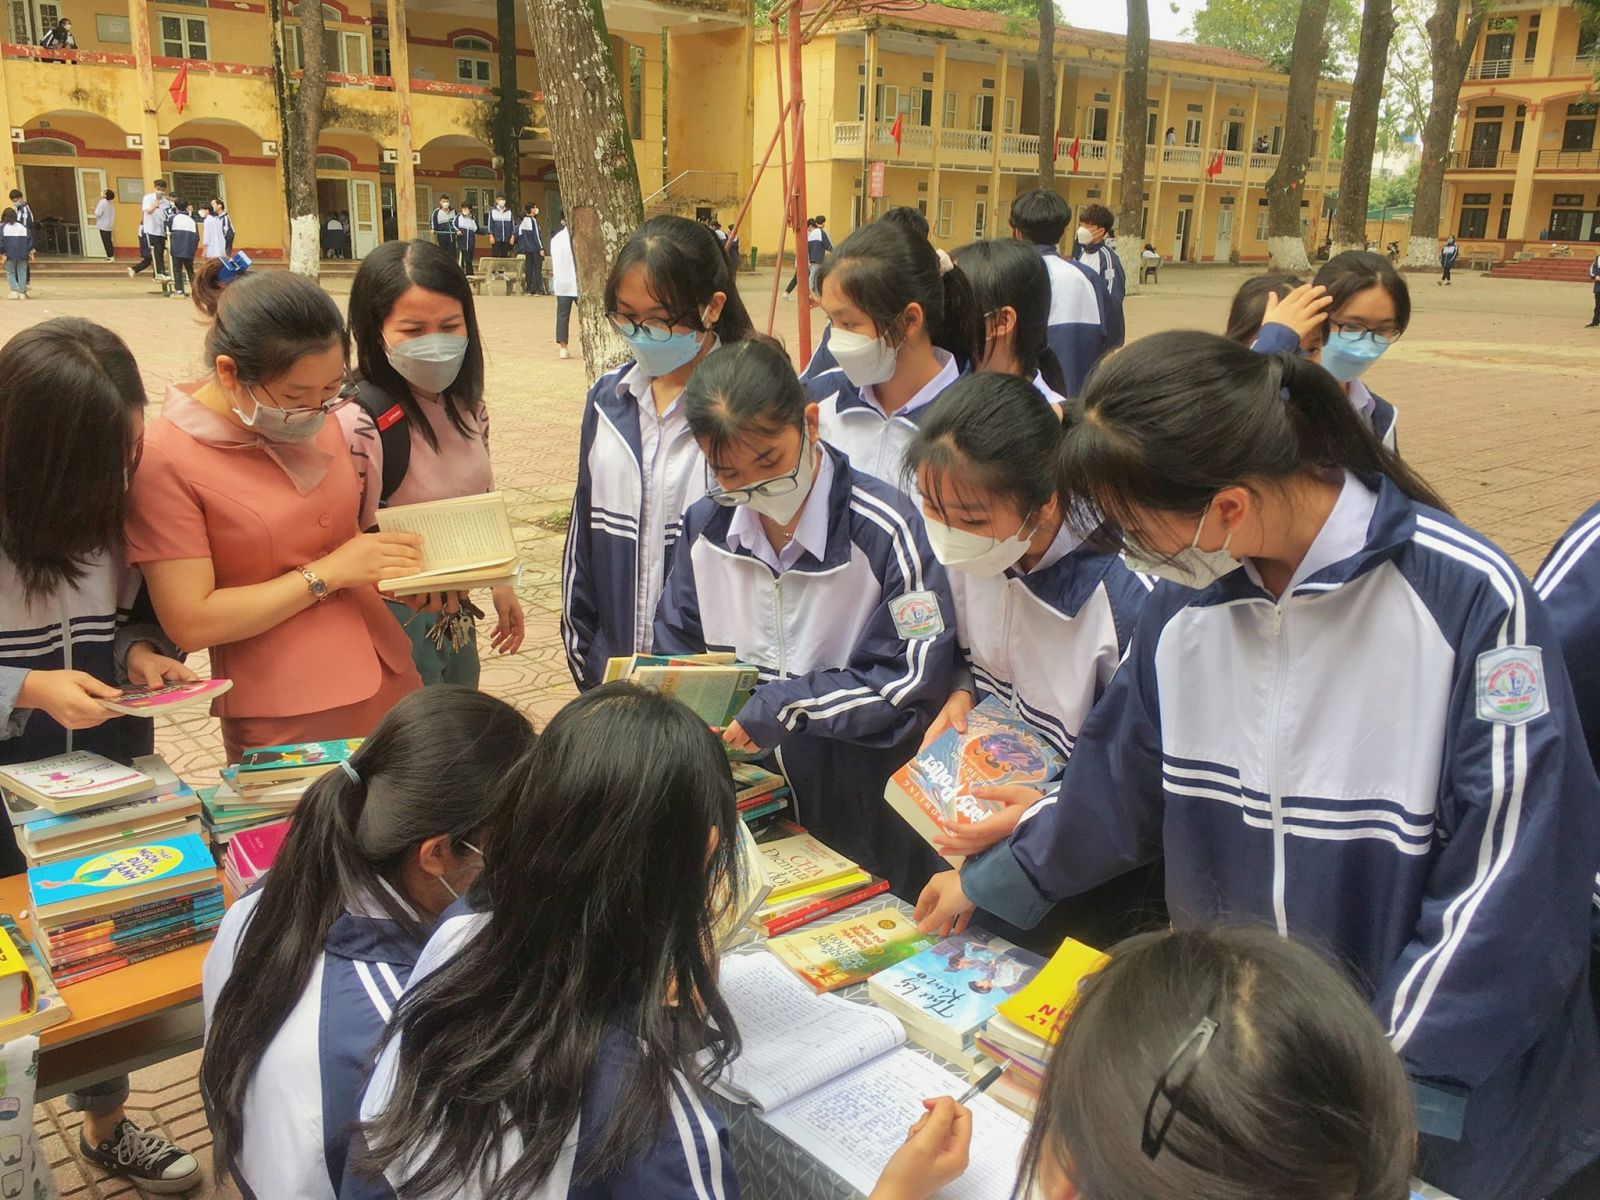 Huyện đoàn Khoái Châu phối hợp  tổ chức “Ngày hội đọc sách và hành động”  và mô hình “đổi sách lấy cây xanh” cho thanh thiếu niên năm 2022